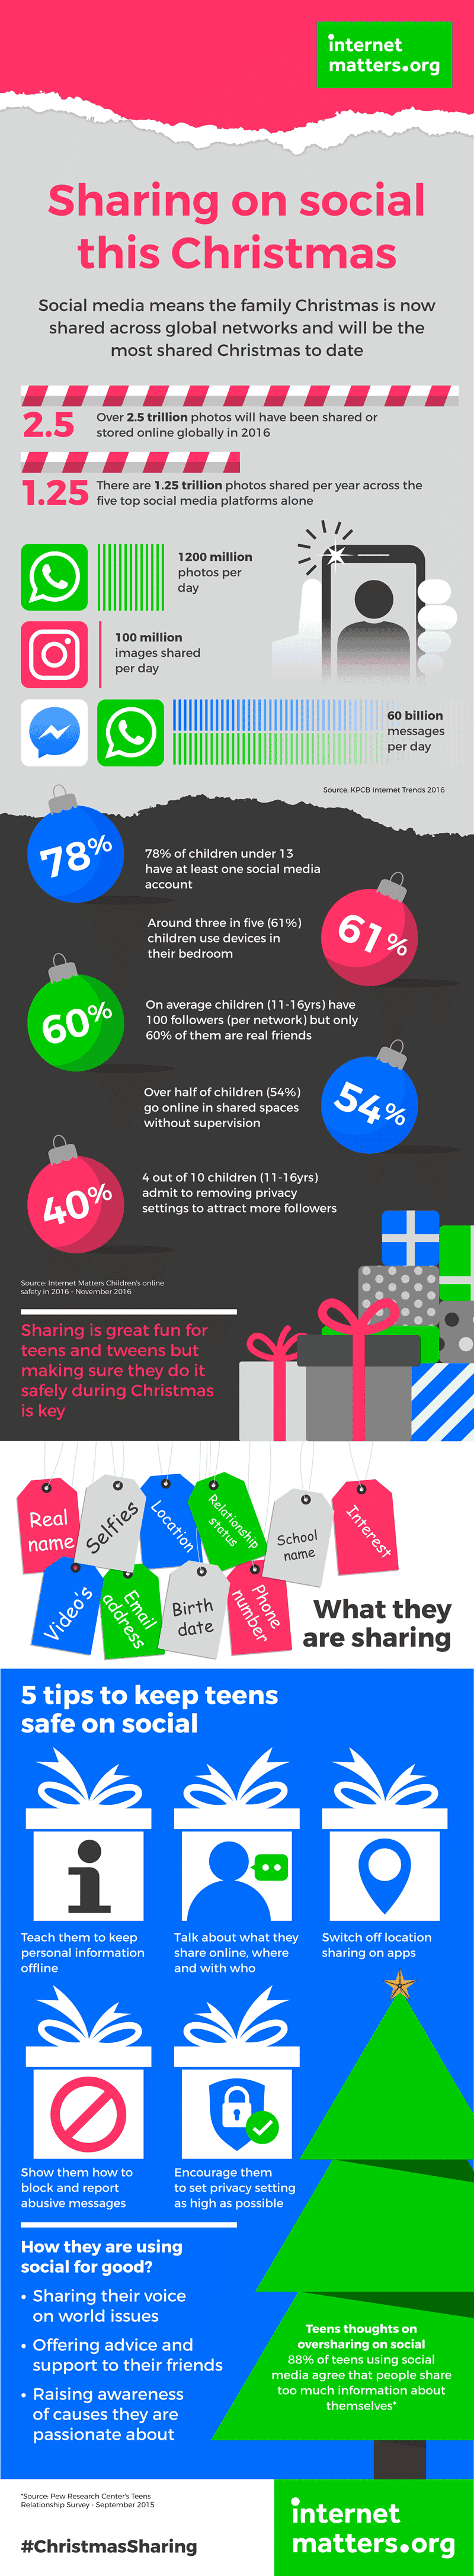 इस क्रिसमस के साथ सबसे अधिक जुड़ा होने की उम्मीद है, 7 बिलियन चित्र दिसंबर 25th पर सोशल मीडिया पर साझा किए जाने के लिए तैयार हैं। सामाजिक साझाकरण पर अन्य आँकड़े देखें और बच्चों को ऑनलाइन सुरक्षित रूप से साझा करने में मदद करने के लिए सुझाव दें।